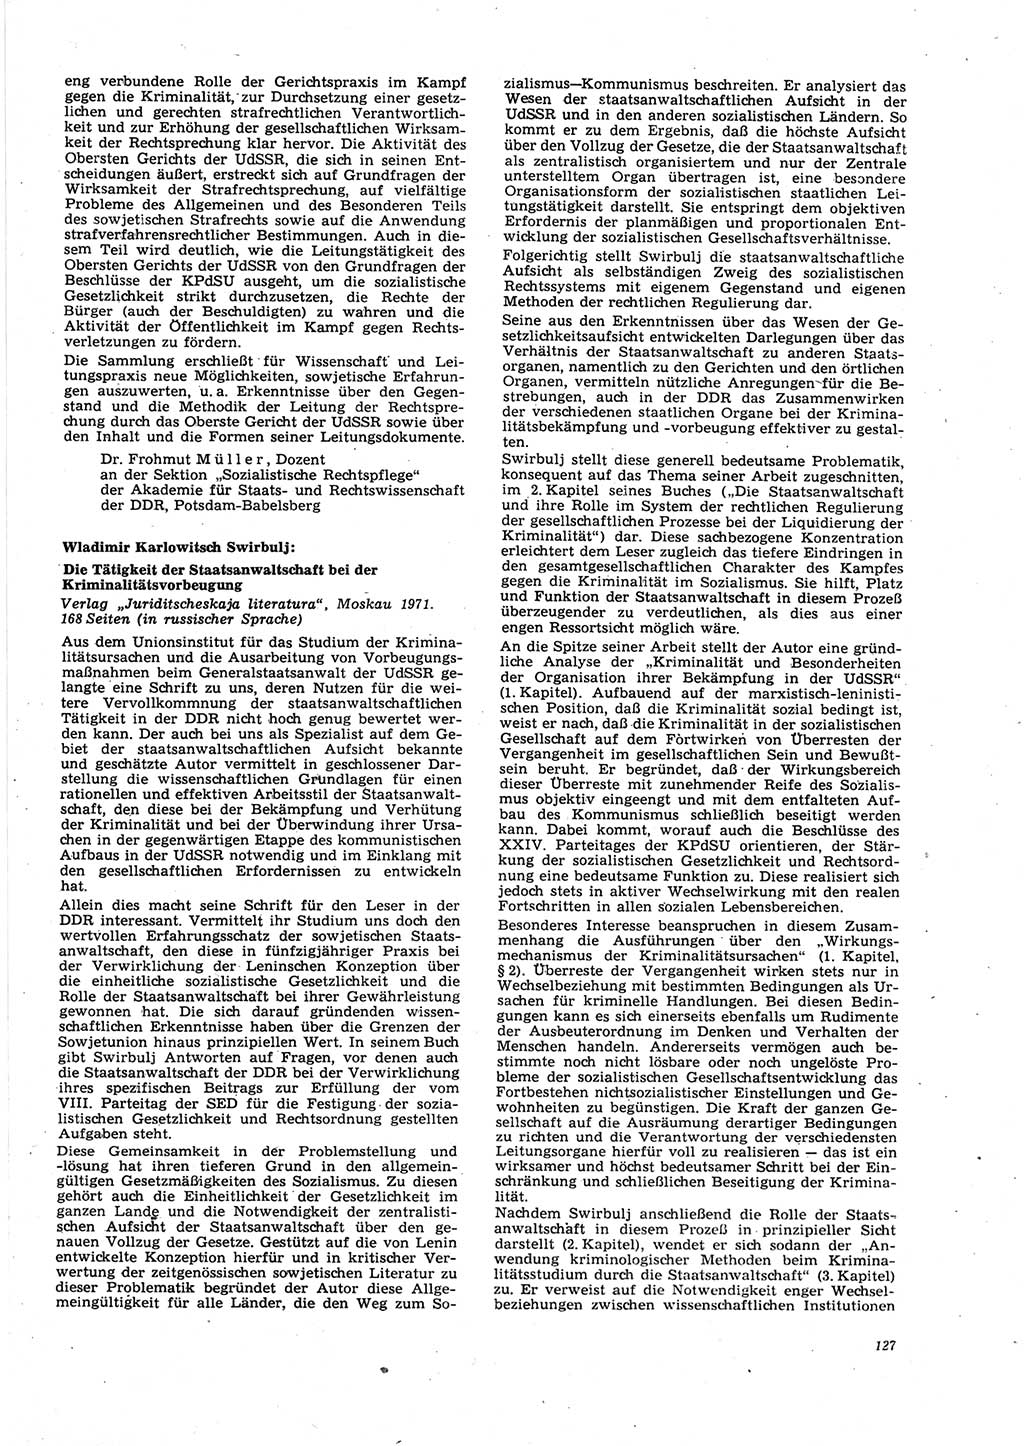 Neue Justiz (NJ), Zeitschrift für Recht und Rechtswissenschaft [Deutsche Demokratische Republik (DDR)], 27. Jahrgang 1973, Seite 127 (NJ DDR 1973, S. 127)